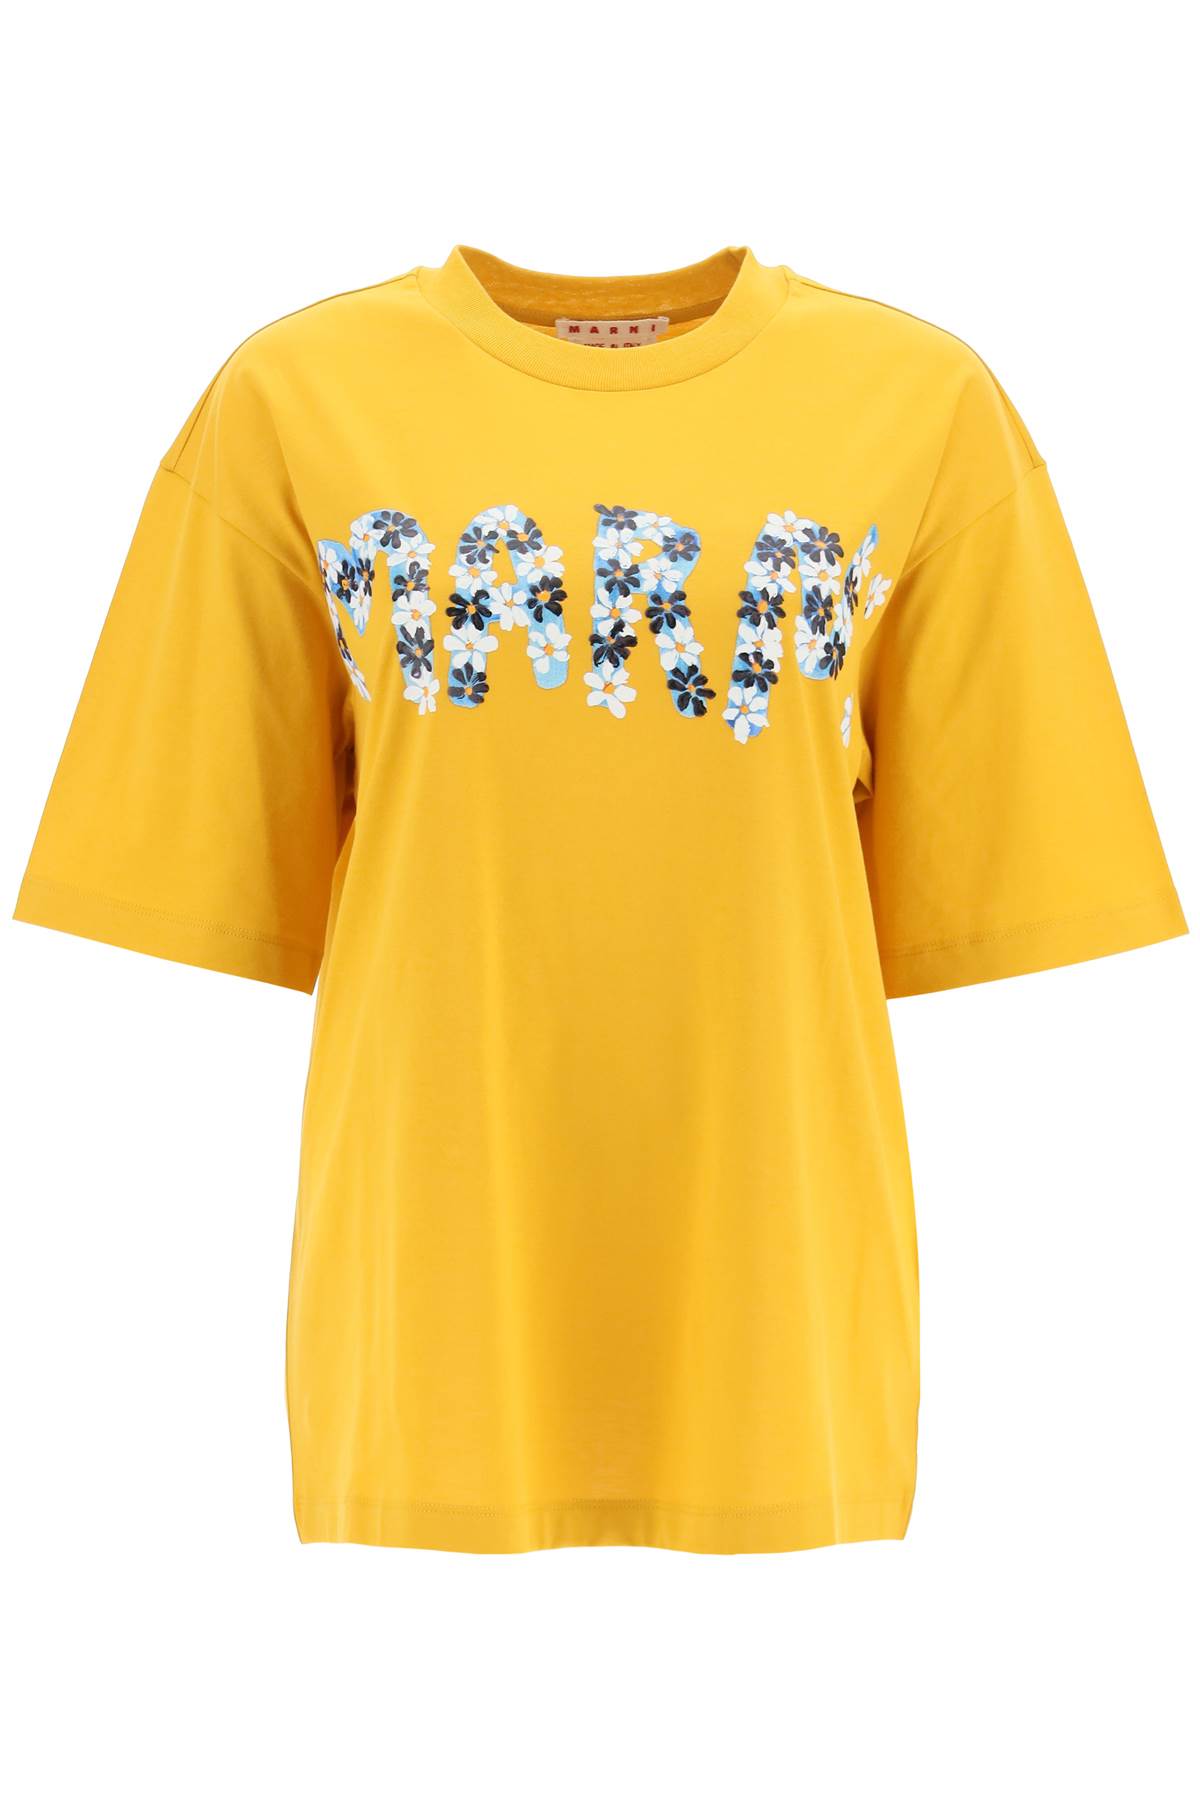 Marni Daisy Logo T-shirt